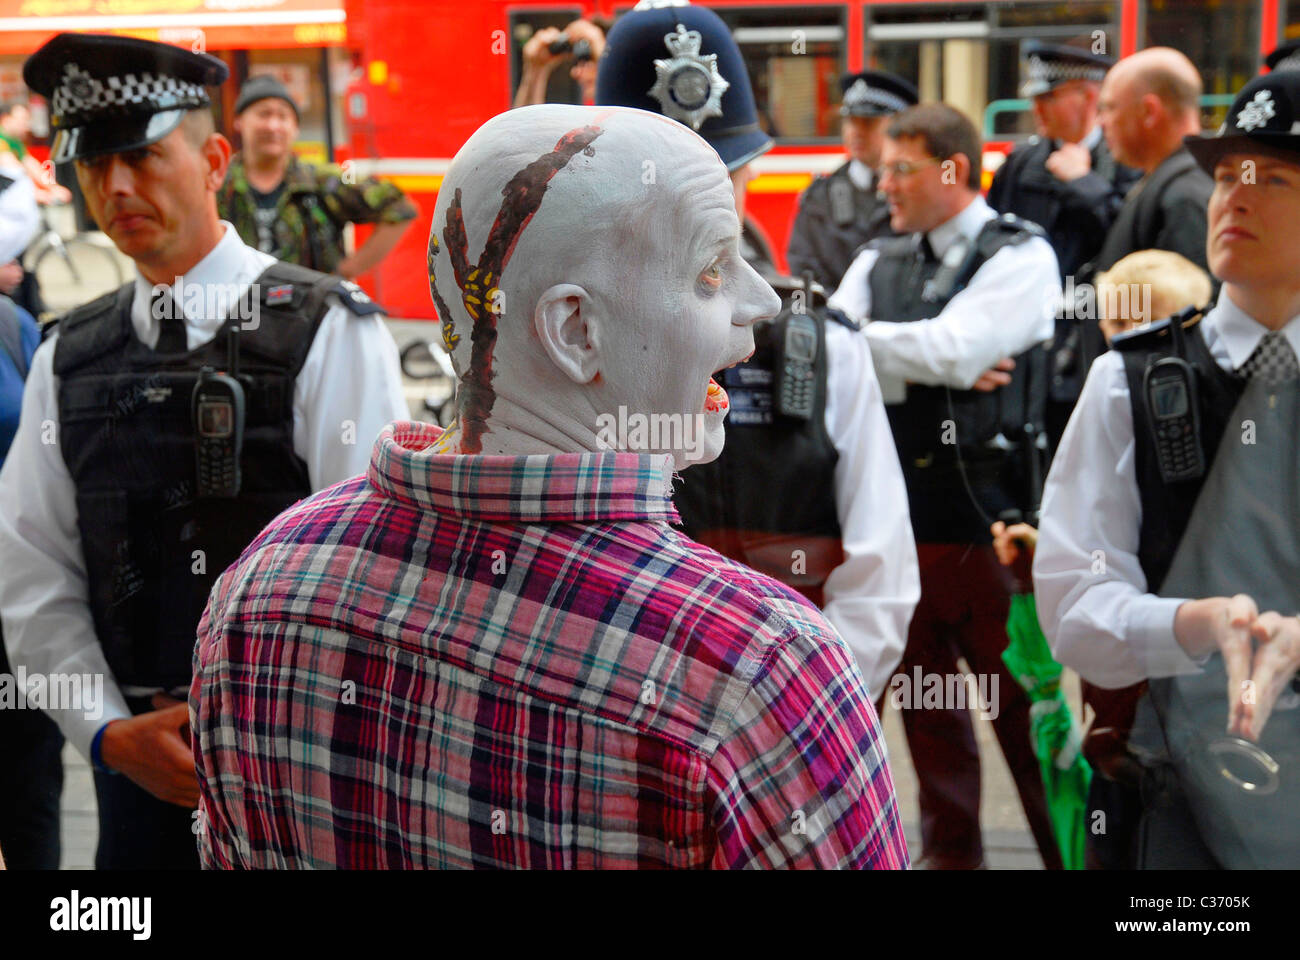 Un 'zombie' avec la police dans la région de Oxford St., London, 29-04-2011. PHOTO © John Robertson, 2011. Banque D'Images